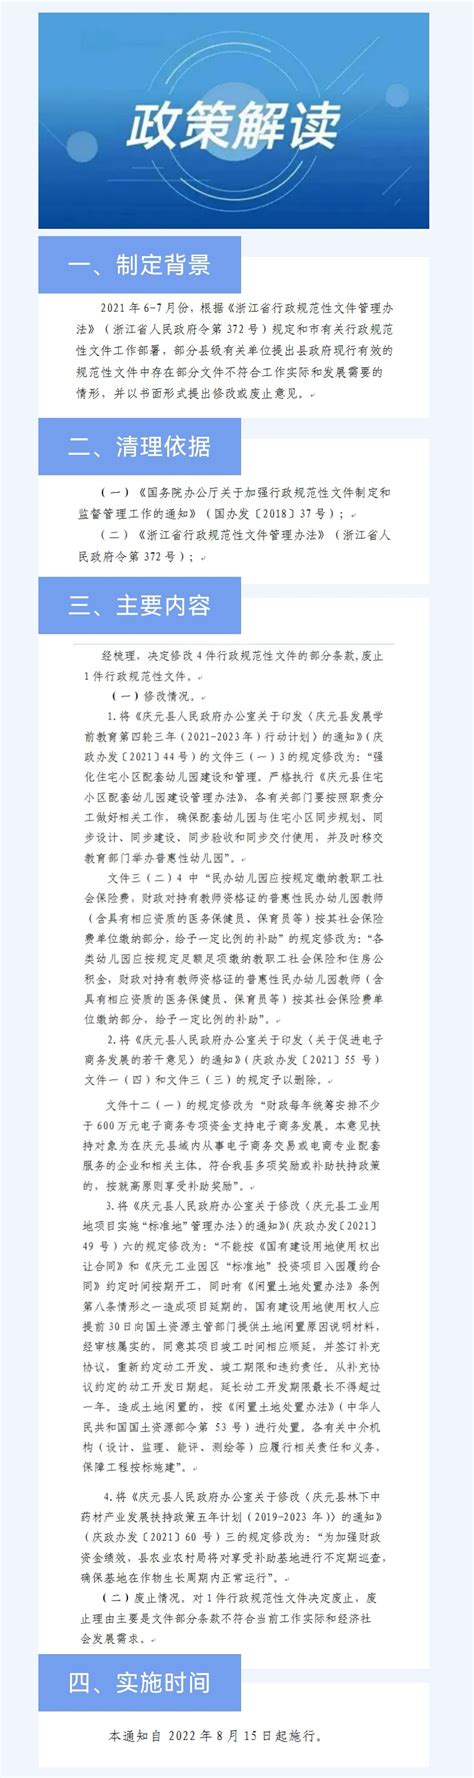 【图解】《庆元县人民政府办公室关于修改和废止部分行政规范性文件的通知》政策解读